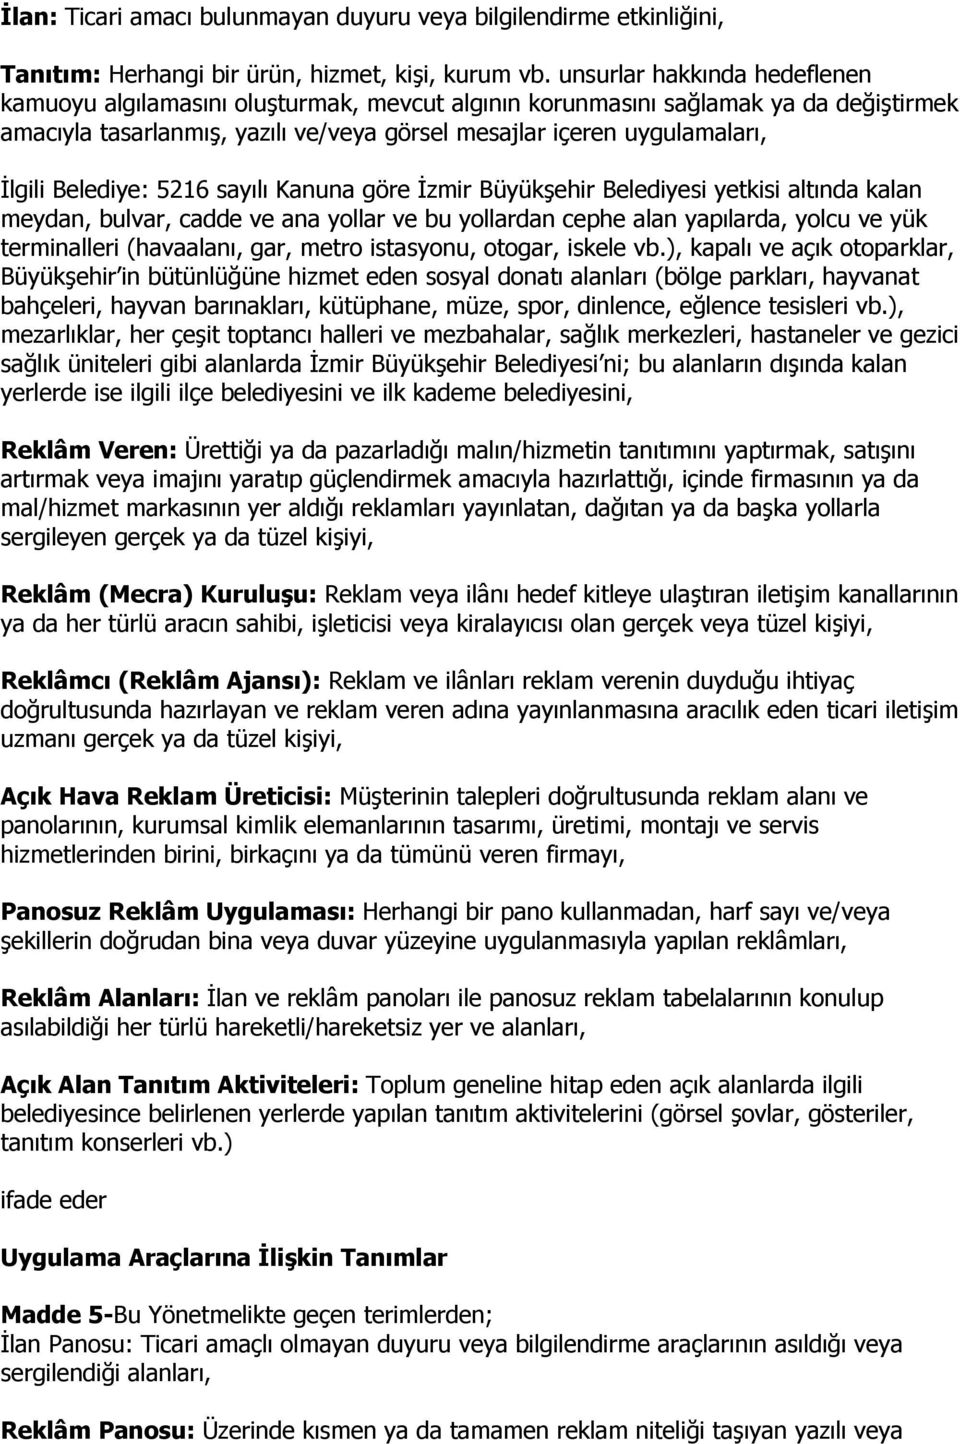 Belediye: 5216 sayılı Kanuna göre İzmir Büyükşehir Belediyesi yetkisi altında kalan meydan, bulvar, cadde ve ana yollar ve bu yollardan cephe alan yapılarda, yolcu ve yük terminalleri (havaalanı,